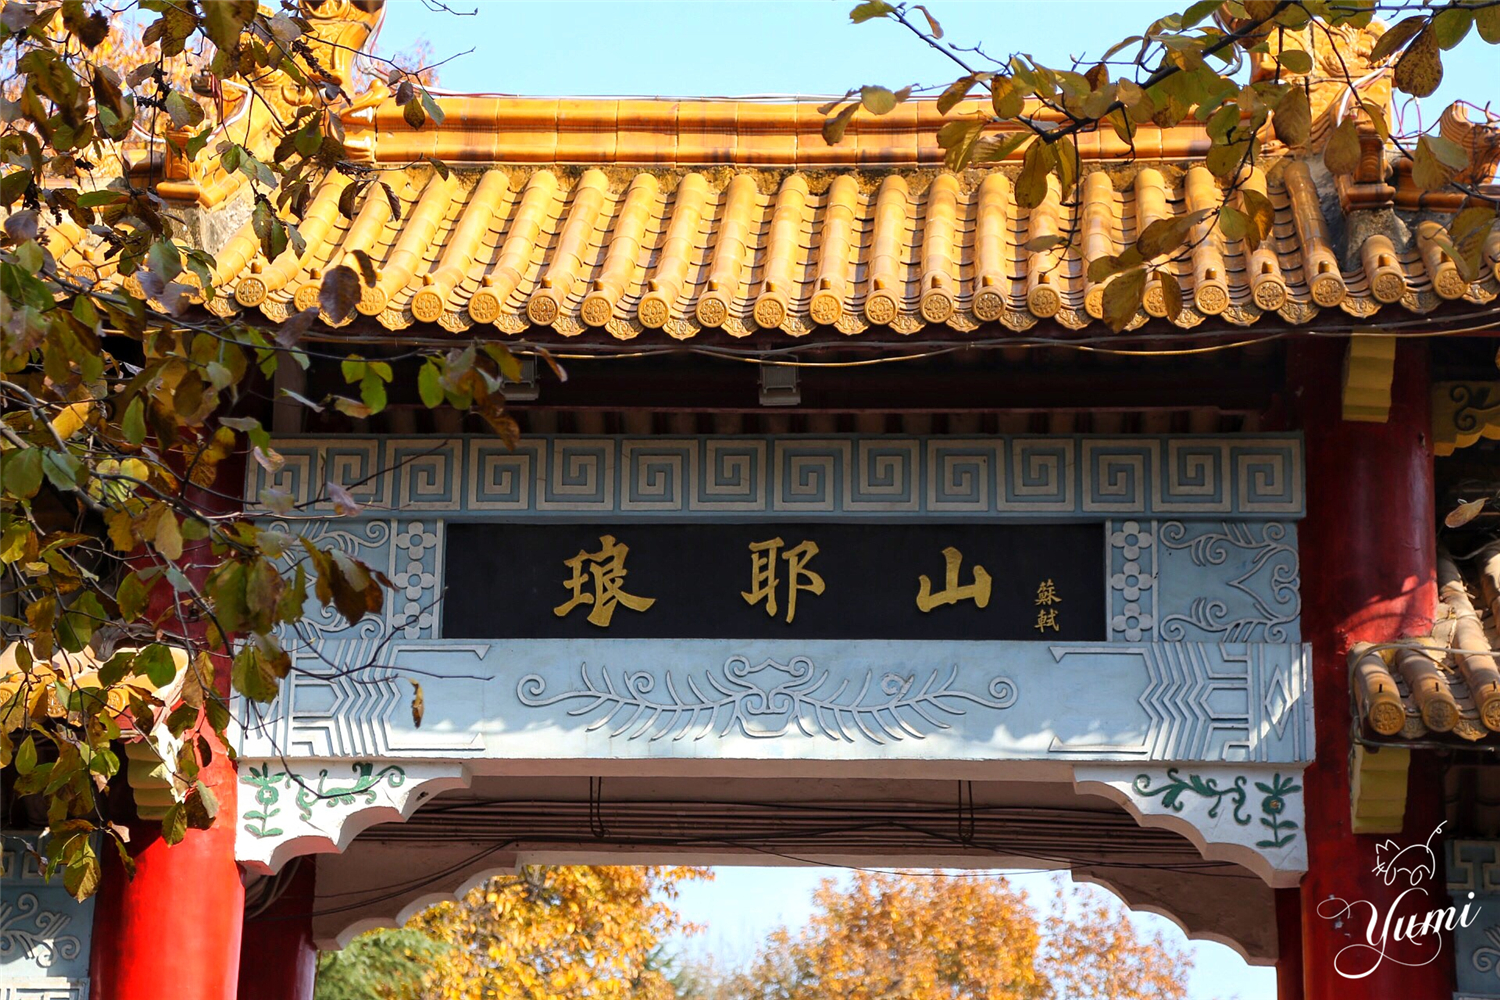 琅琊山这个被称为皖东明珠的地方，究竟有多美引得无数文人称赞？